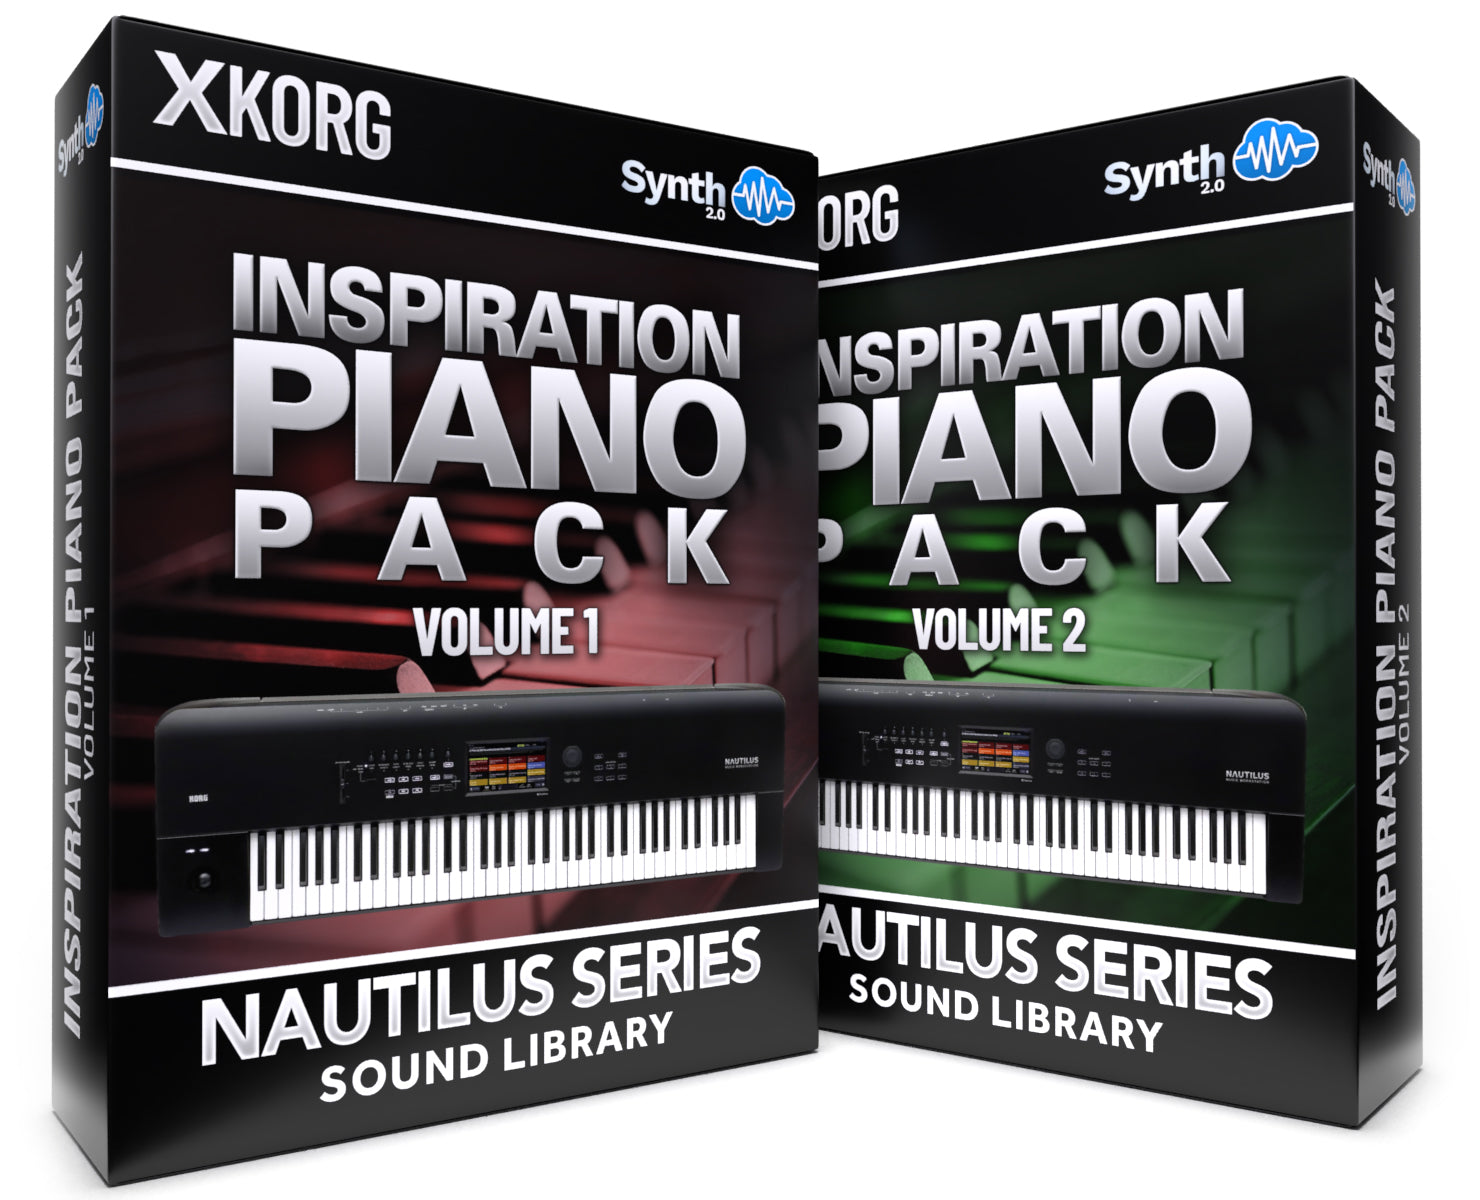 SCL116 - ( Bundle ) - Inspiration Pianos Pack V1 + V2 - Korg Nautilus Series